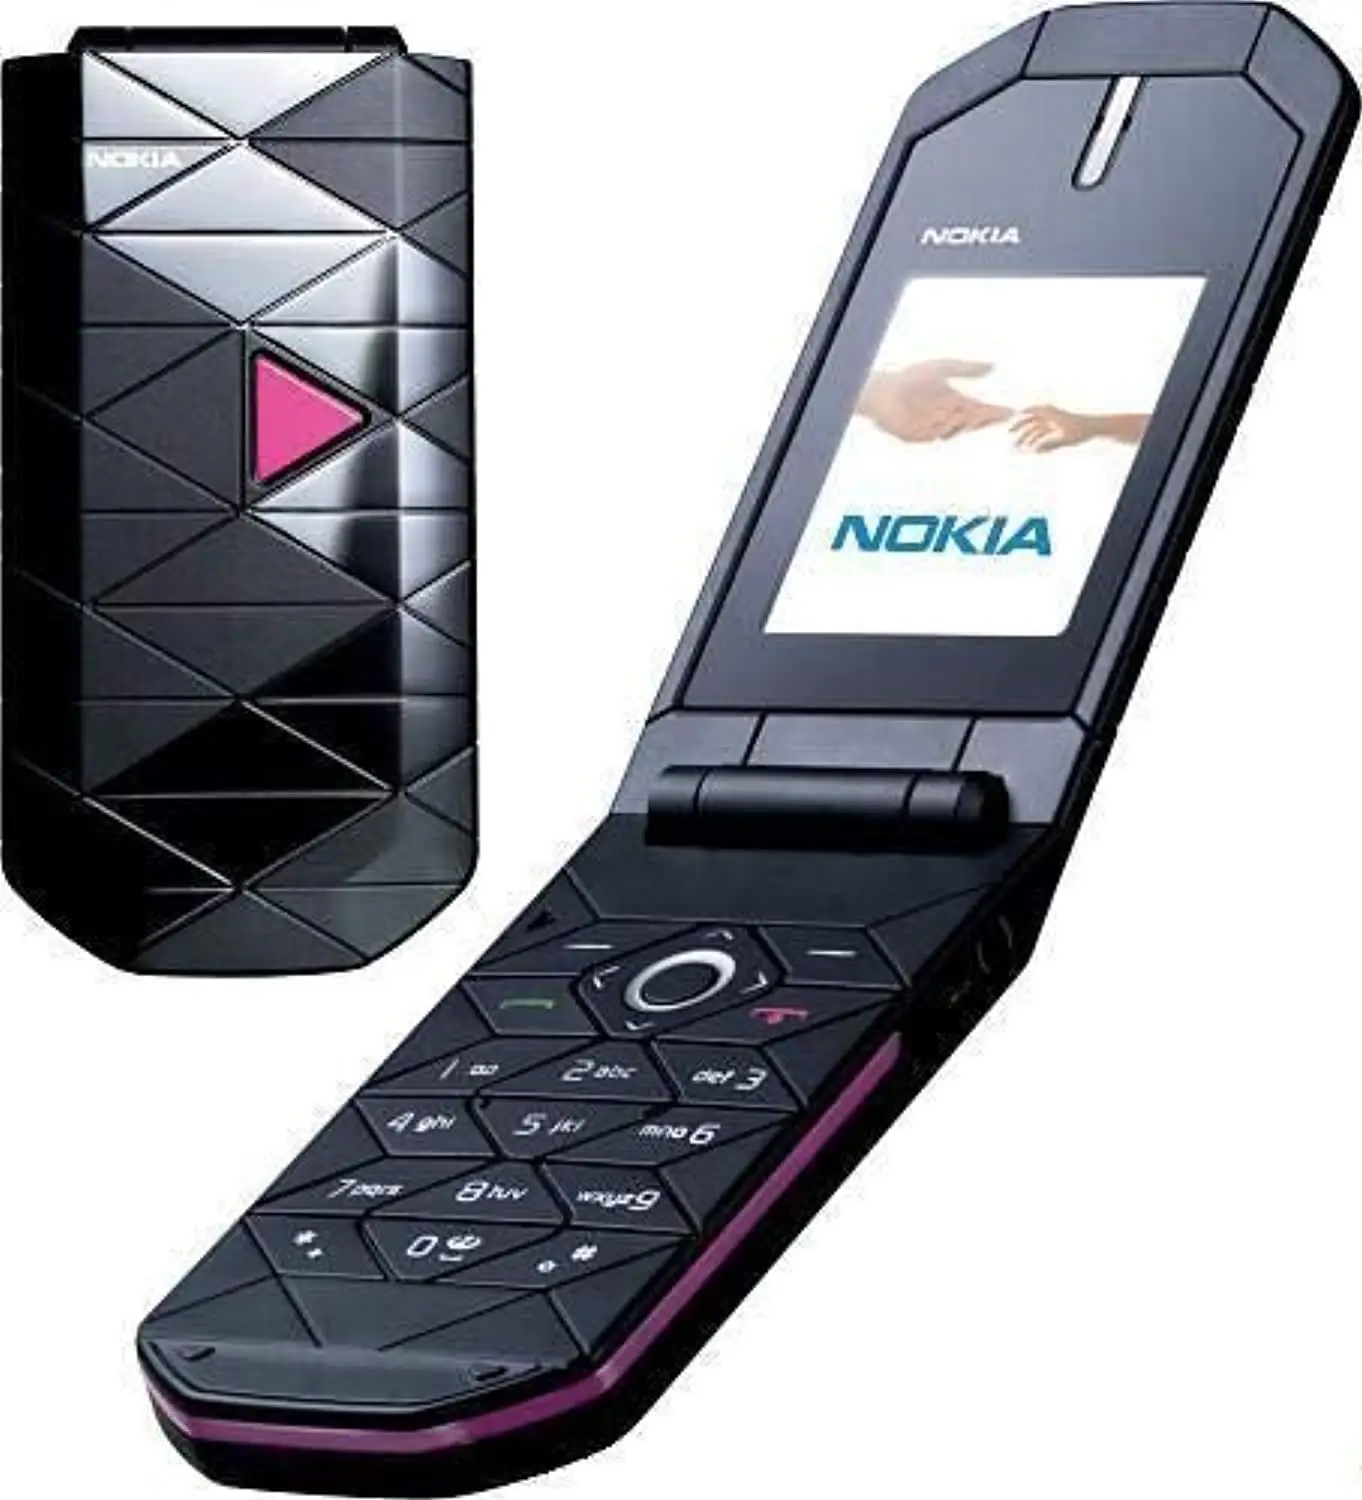 Thứ Hai Tay Điện Thoại Di Động Cho Nokia 7070 Lăng Kính Thứ Hai Tay Điện Thoại Di Động Chất Lượng Cao Lật Điện Thoại Bán Buôn Giá Rẻ Giá Giao Hàng Nhanh